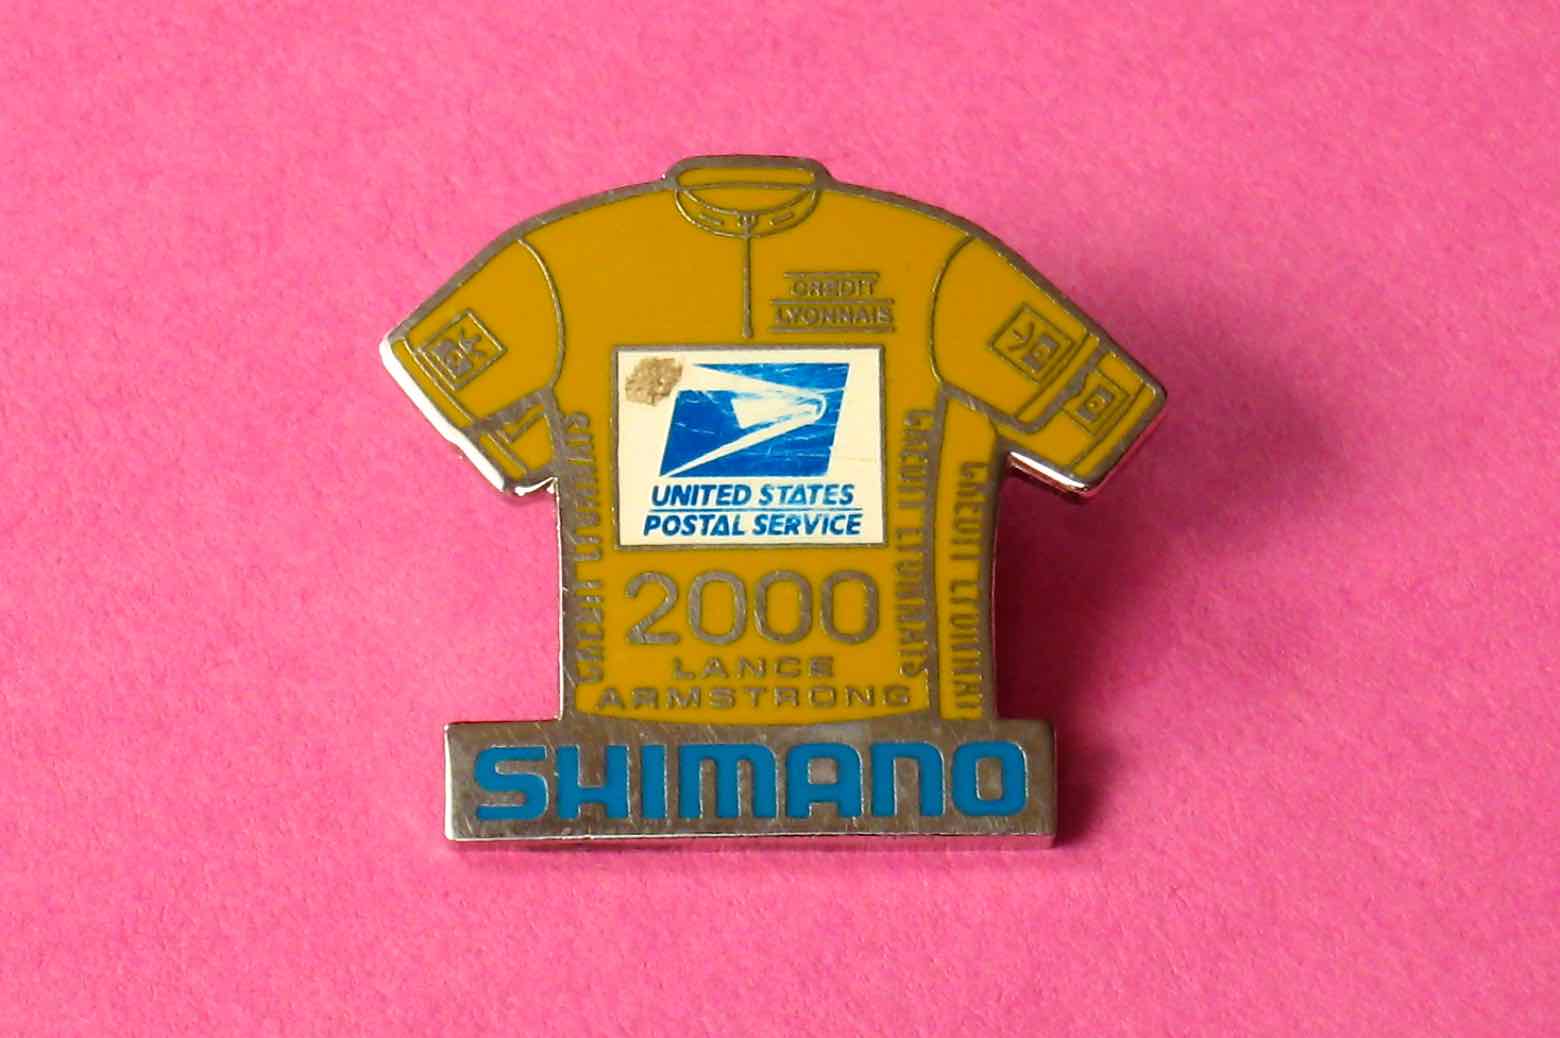 Shimano Dura-Ace Lance Armstrong pin badge - 2000 main image